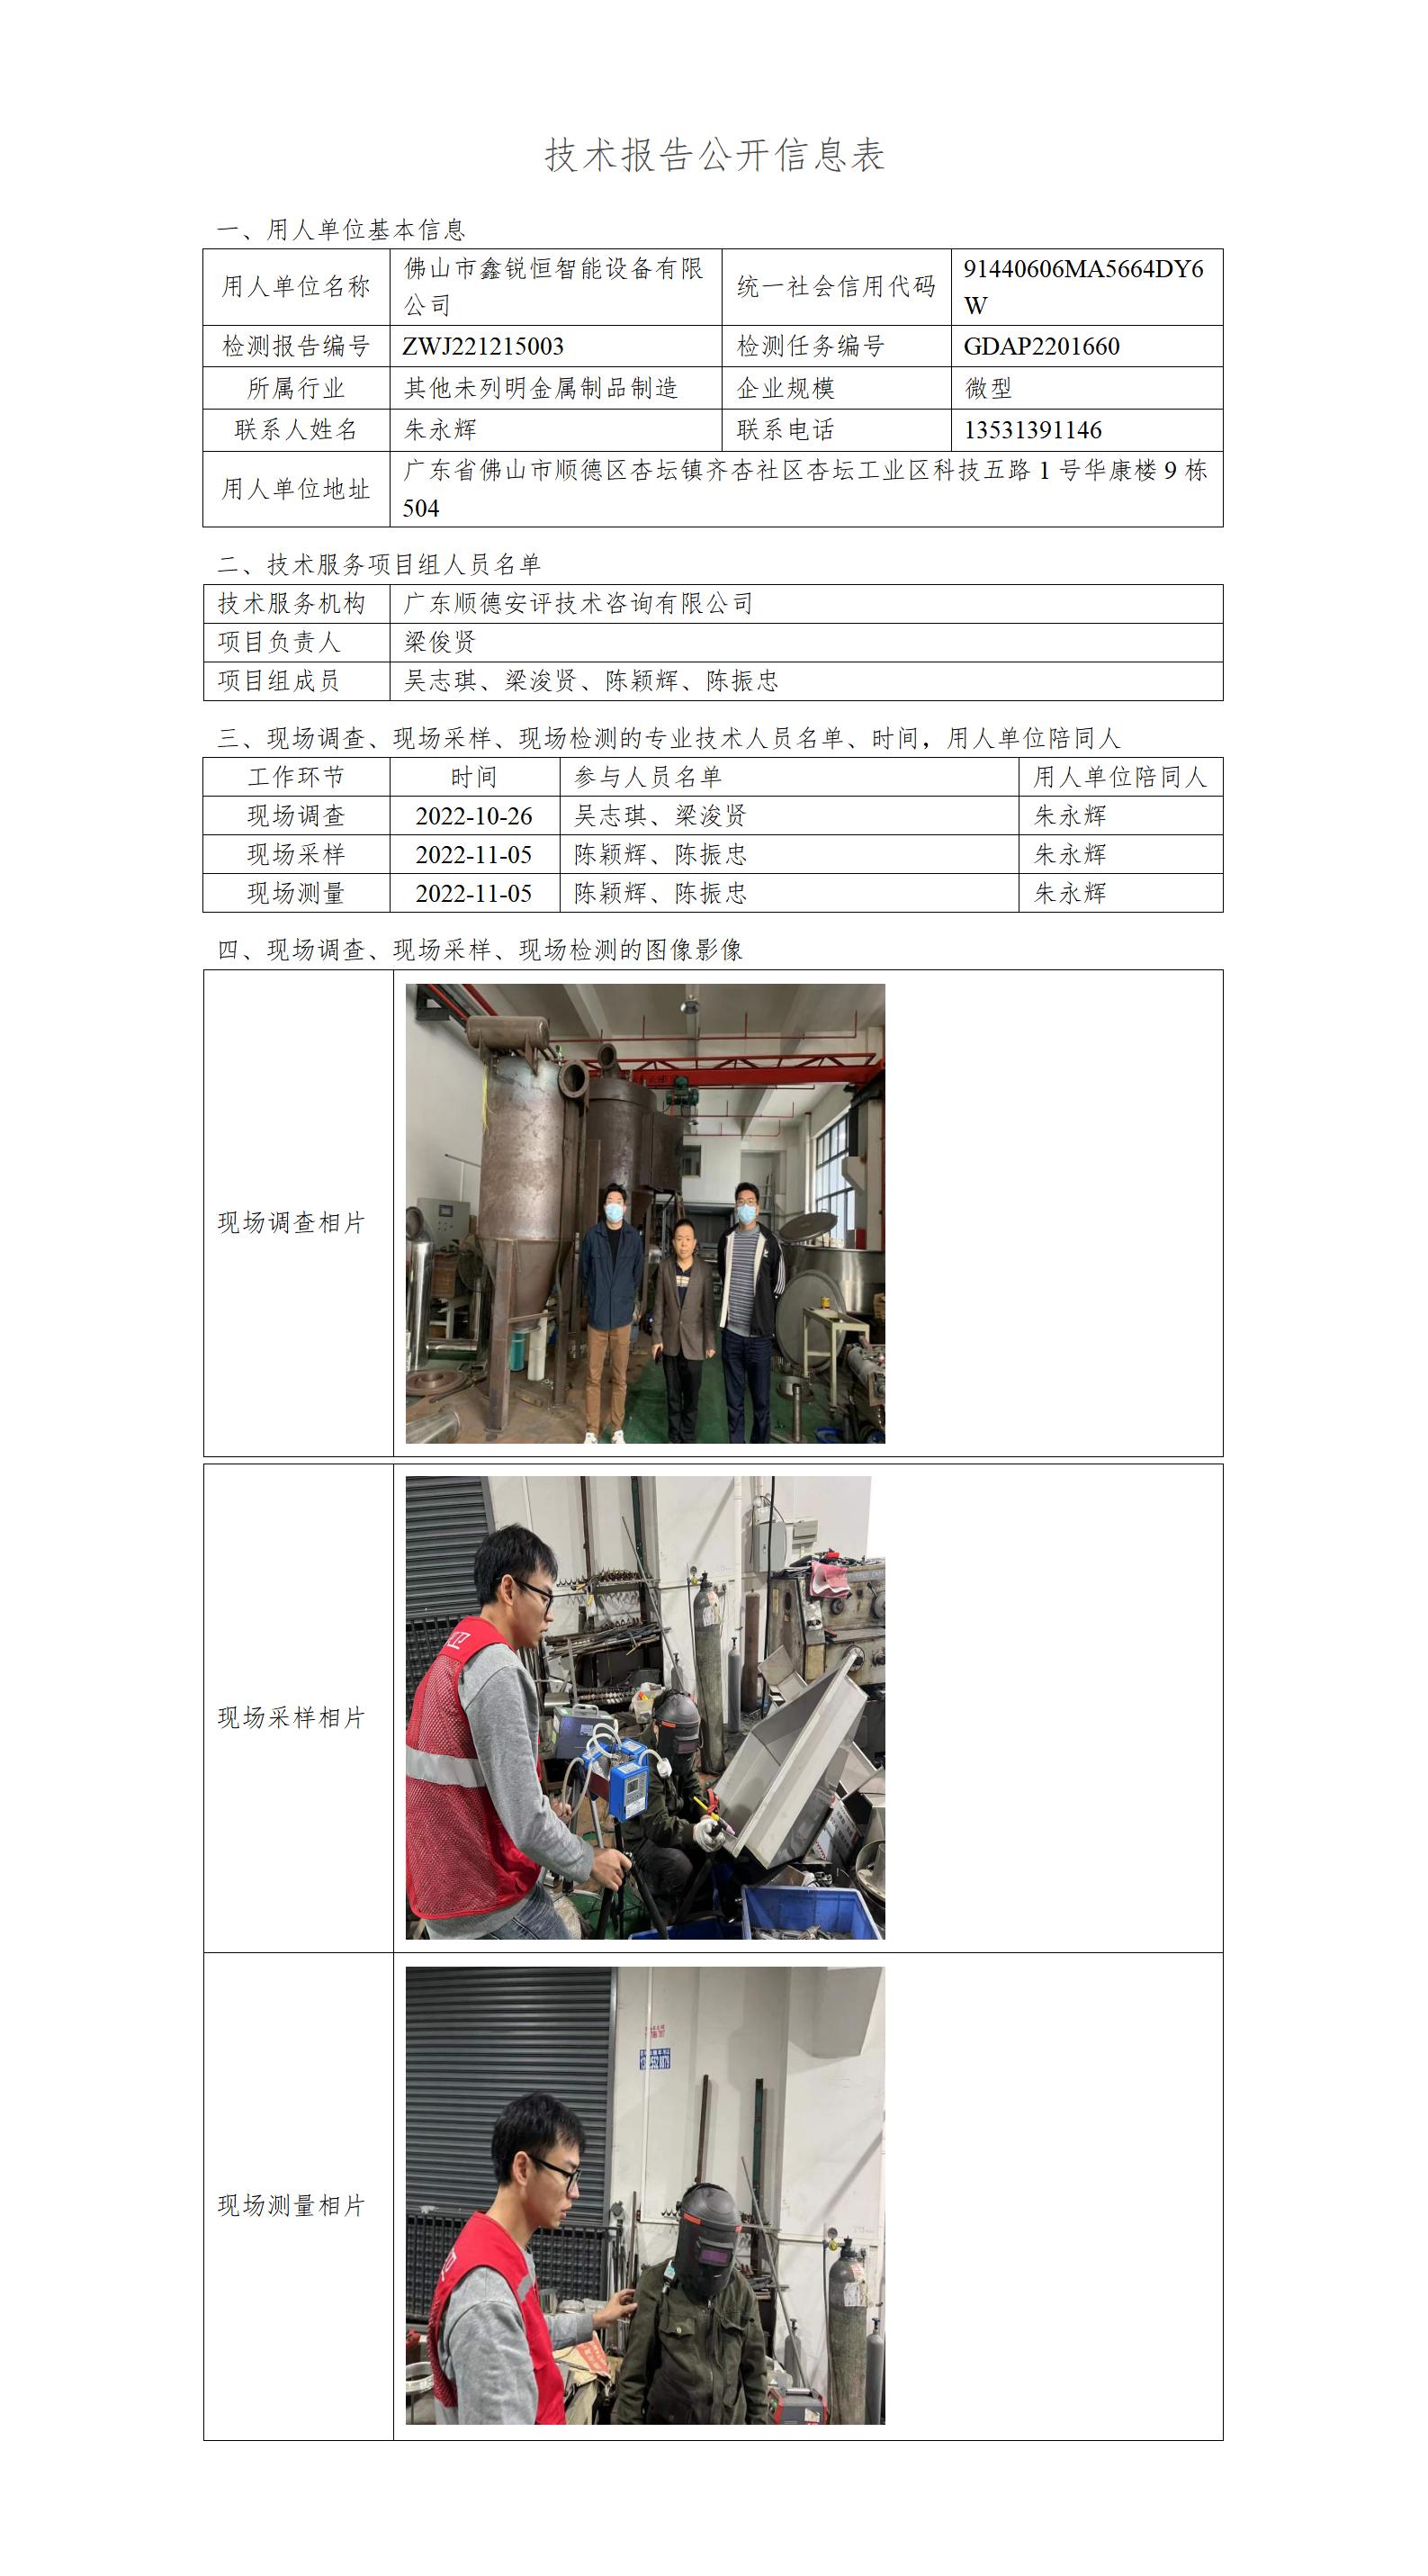 佛山市鑫锐恒智能设备有限公司-2022-技术报告公开信息表_01.jpg